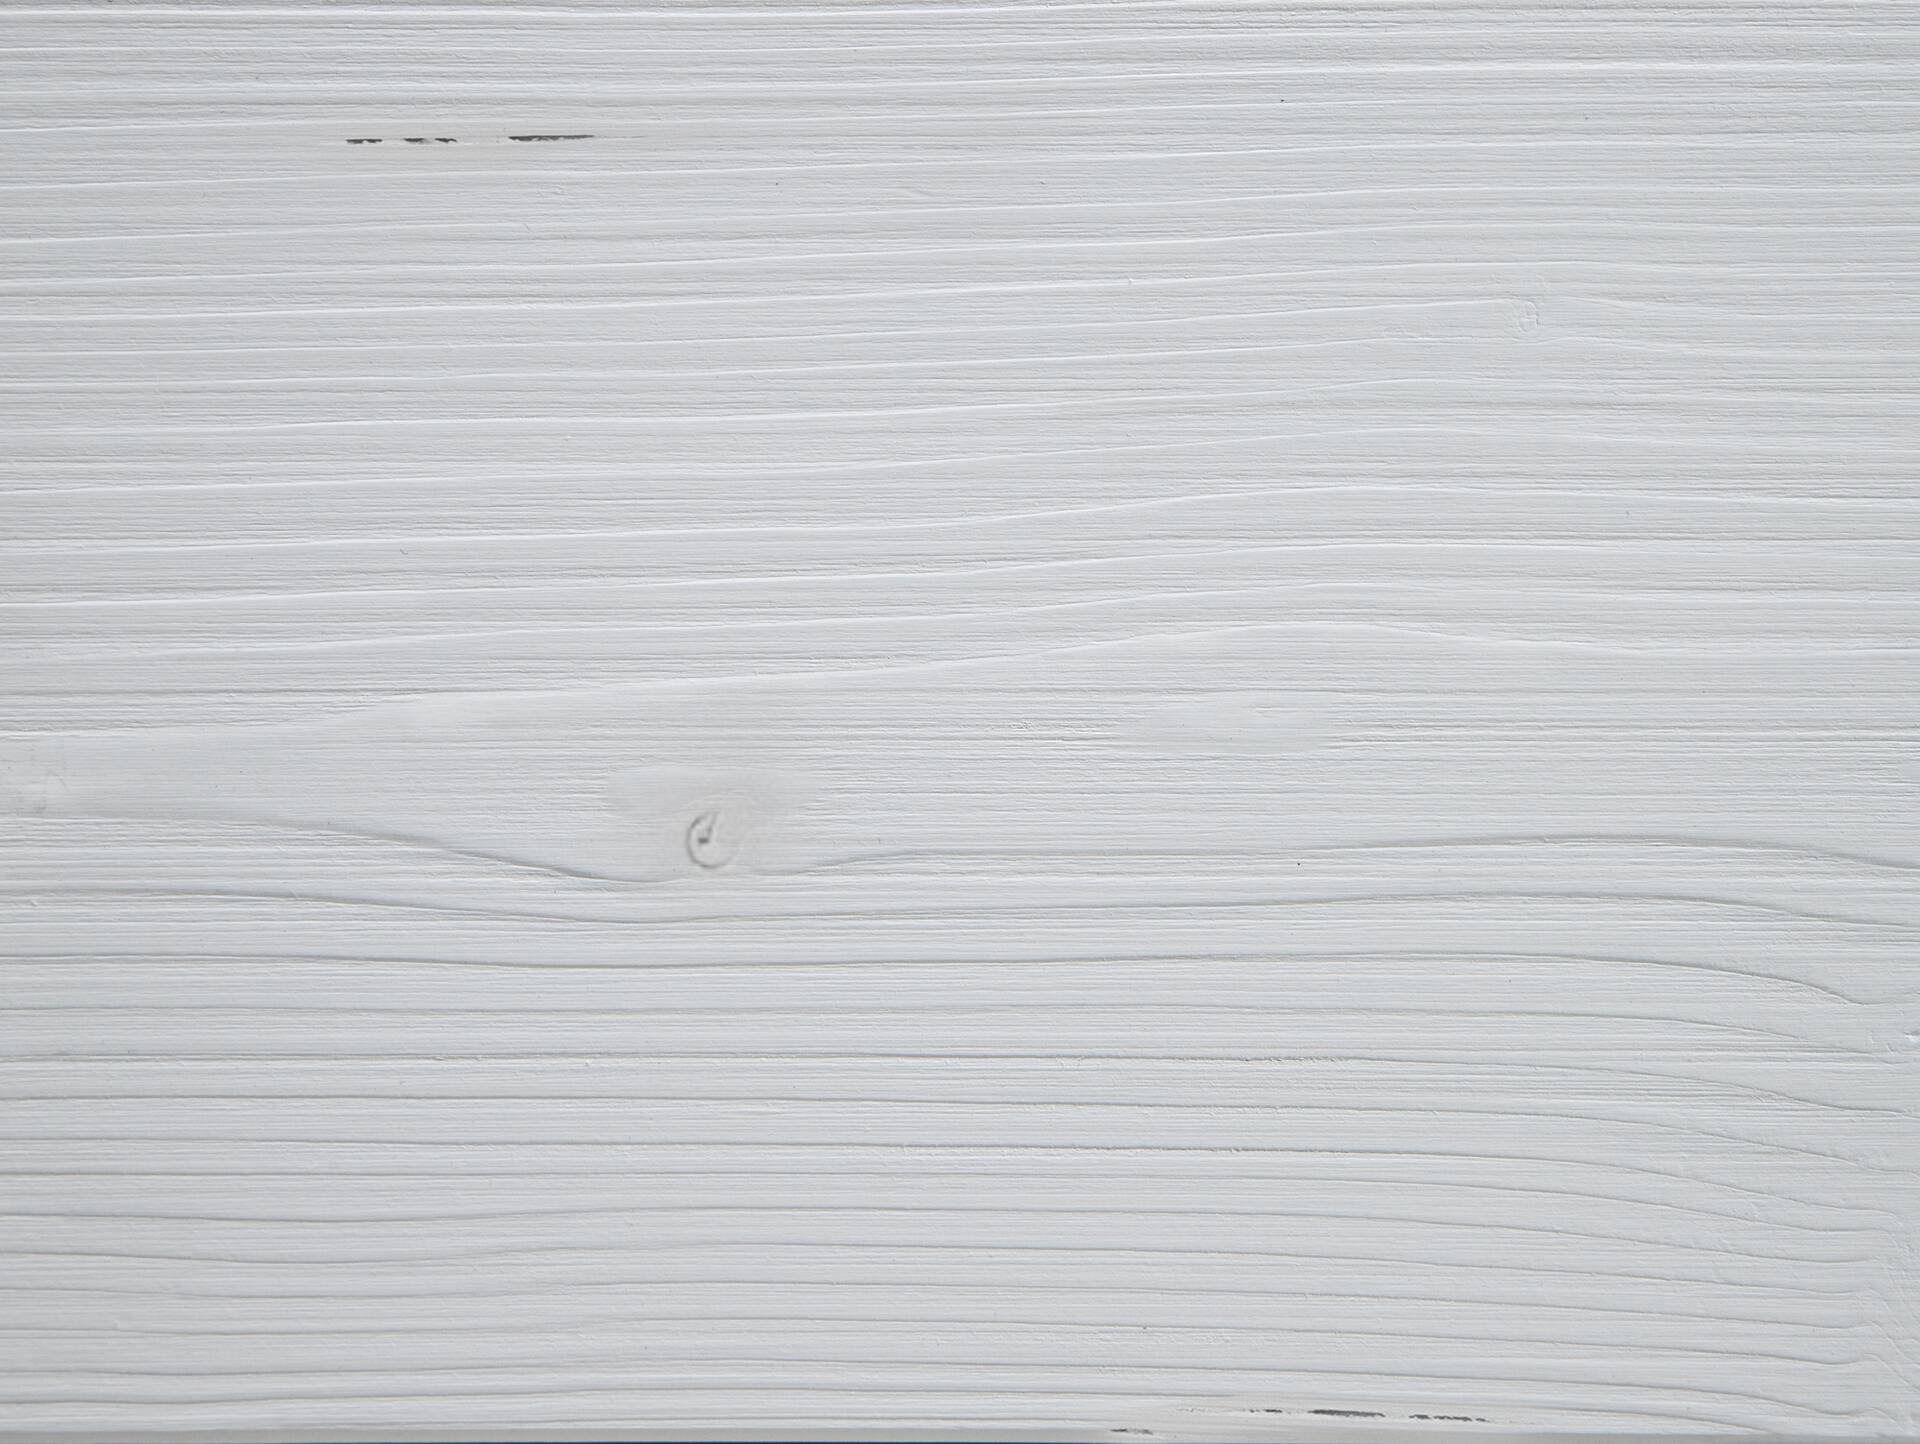 LUKY Bett Metallfuß, mit Polsterkopfteil, Material Massivholz, Fichte massiv 90 x 220 cm | weiss | Stoff Anthrazit